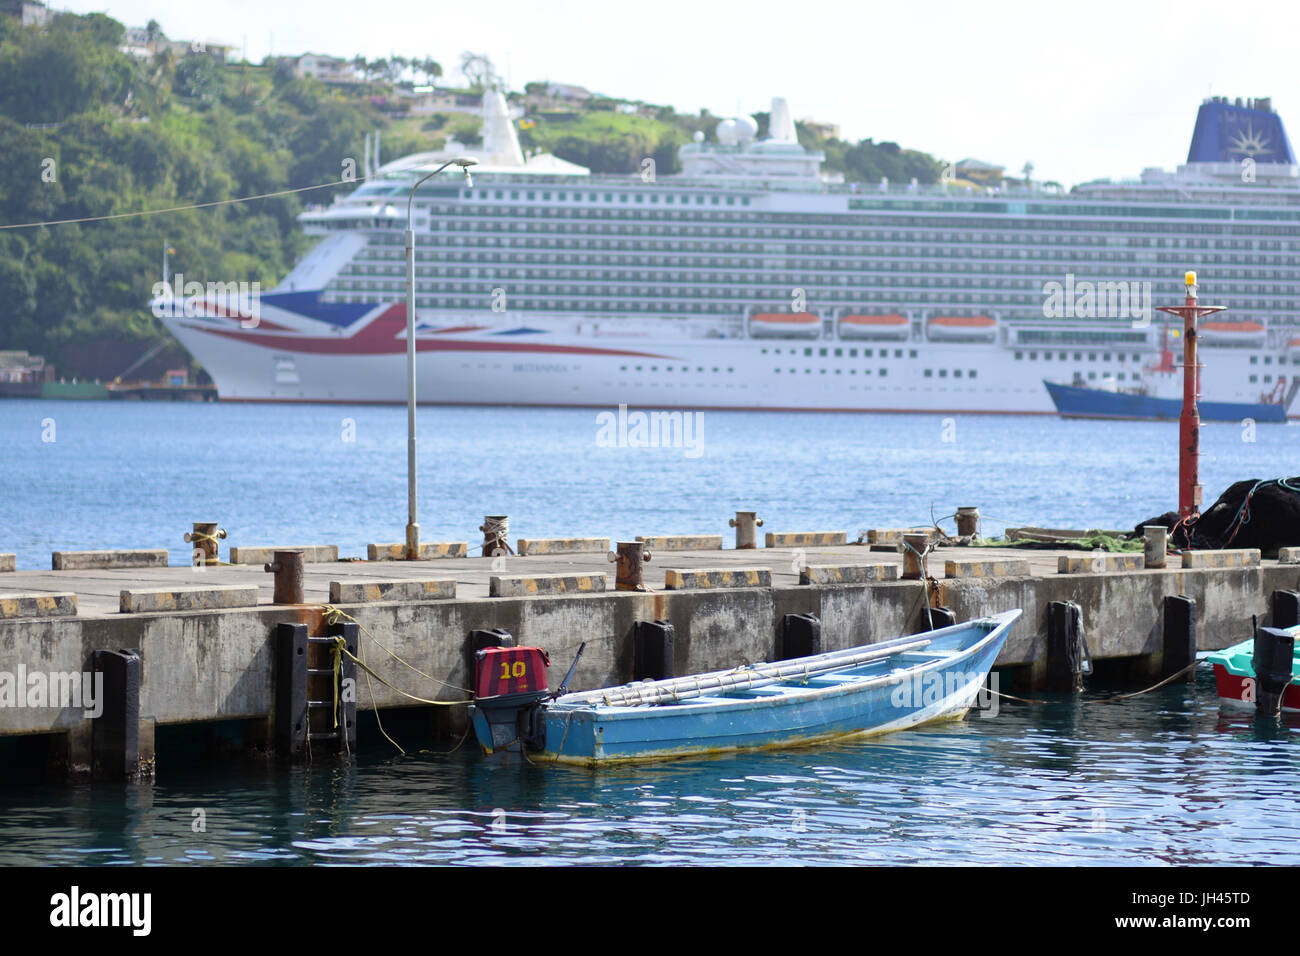 P & O Kreuzfahrt Schiff MV Britannia angedockt in Kingstown, St. Vincent & die Grenadinen in der Karibik, mit kleinen lokalen Boot im Vordergrund Stockfoto